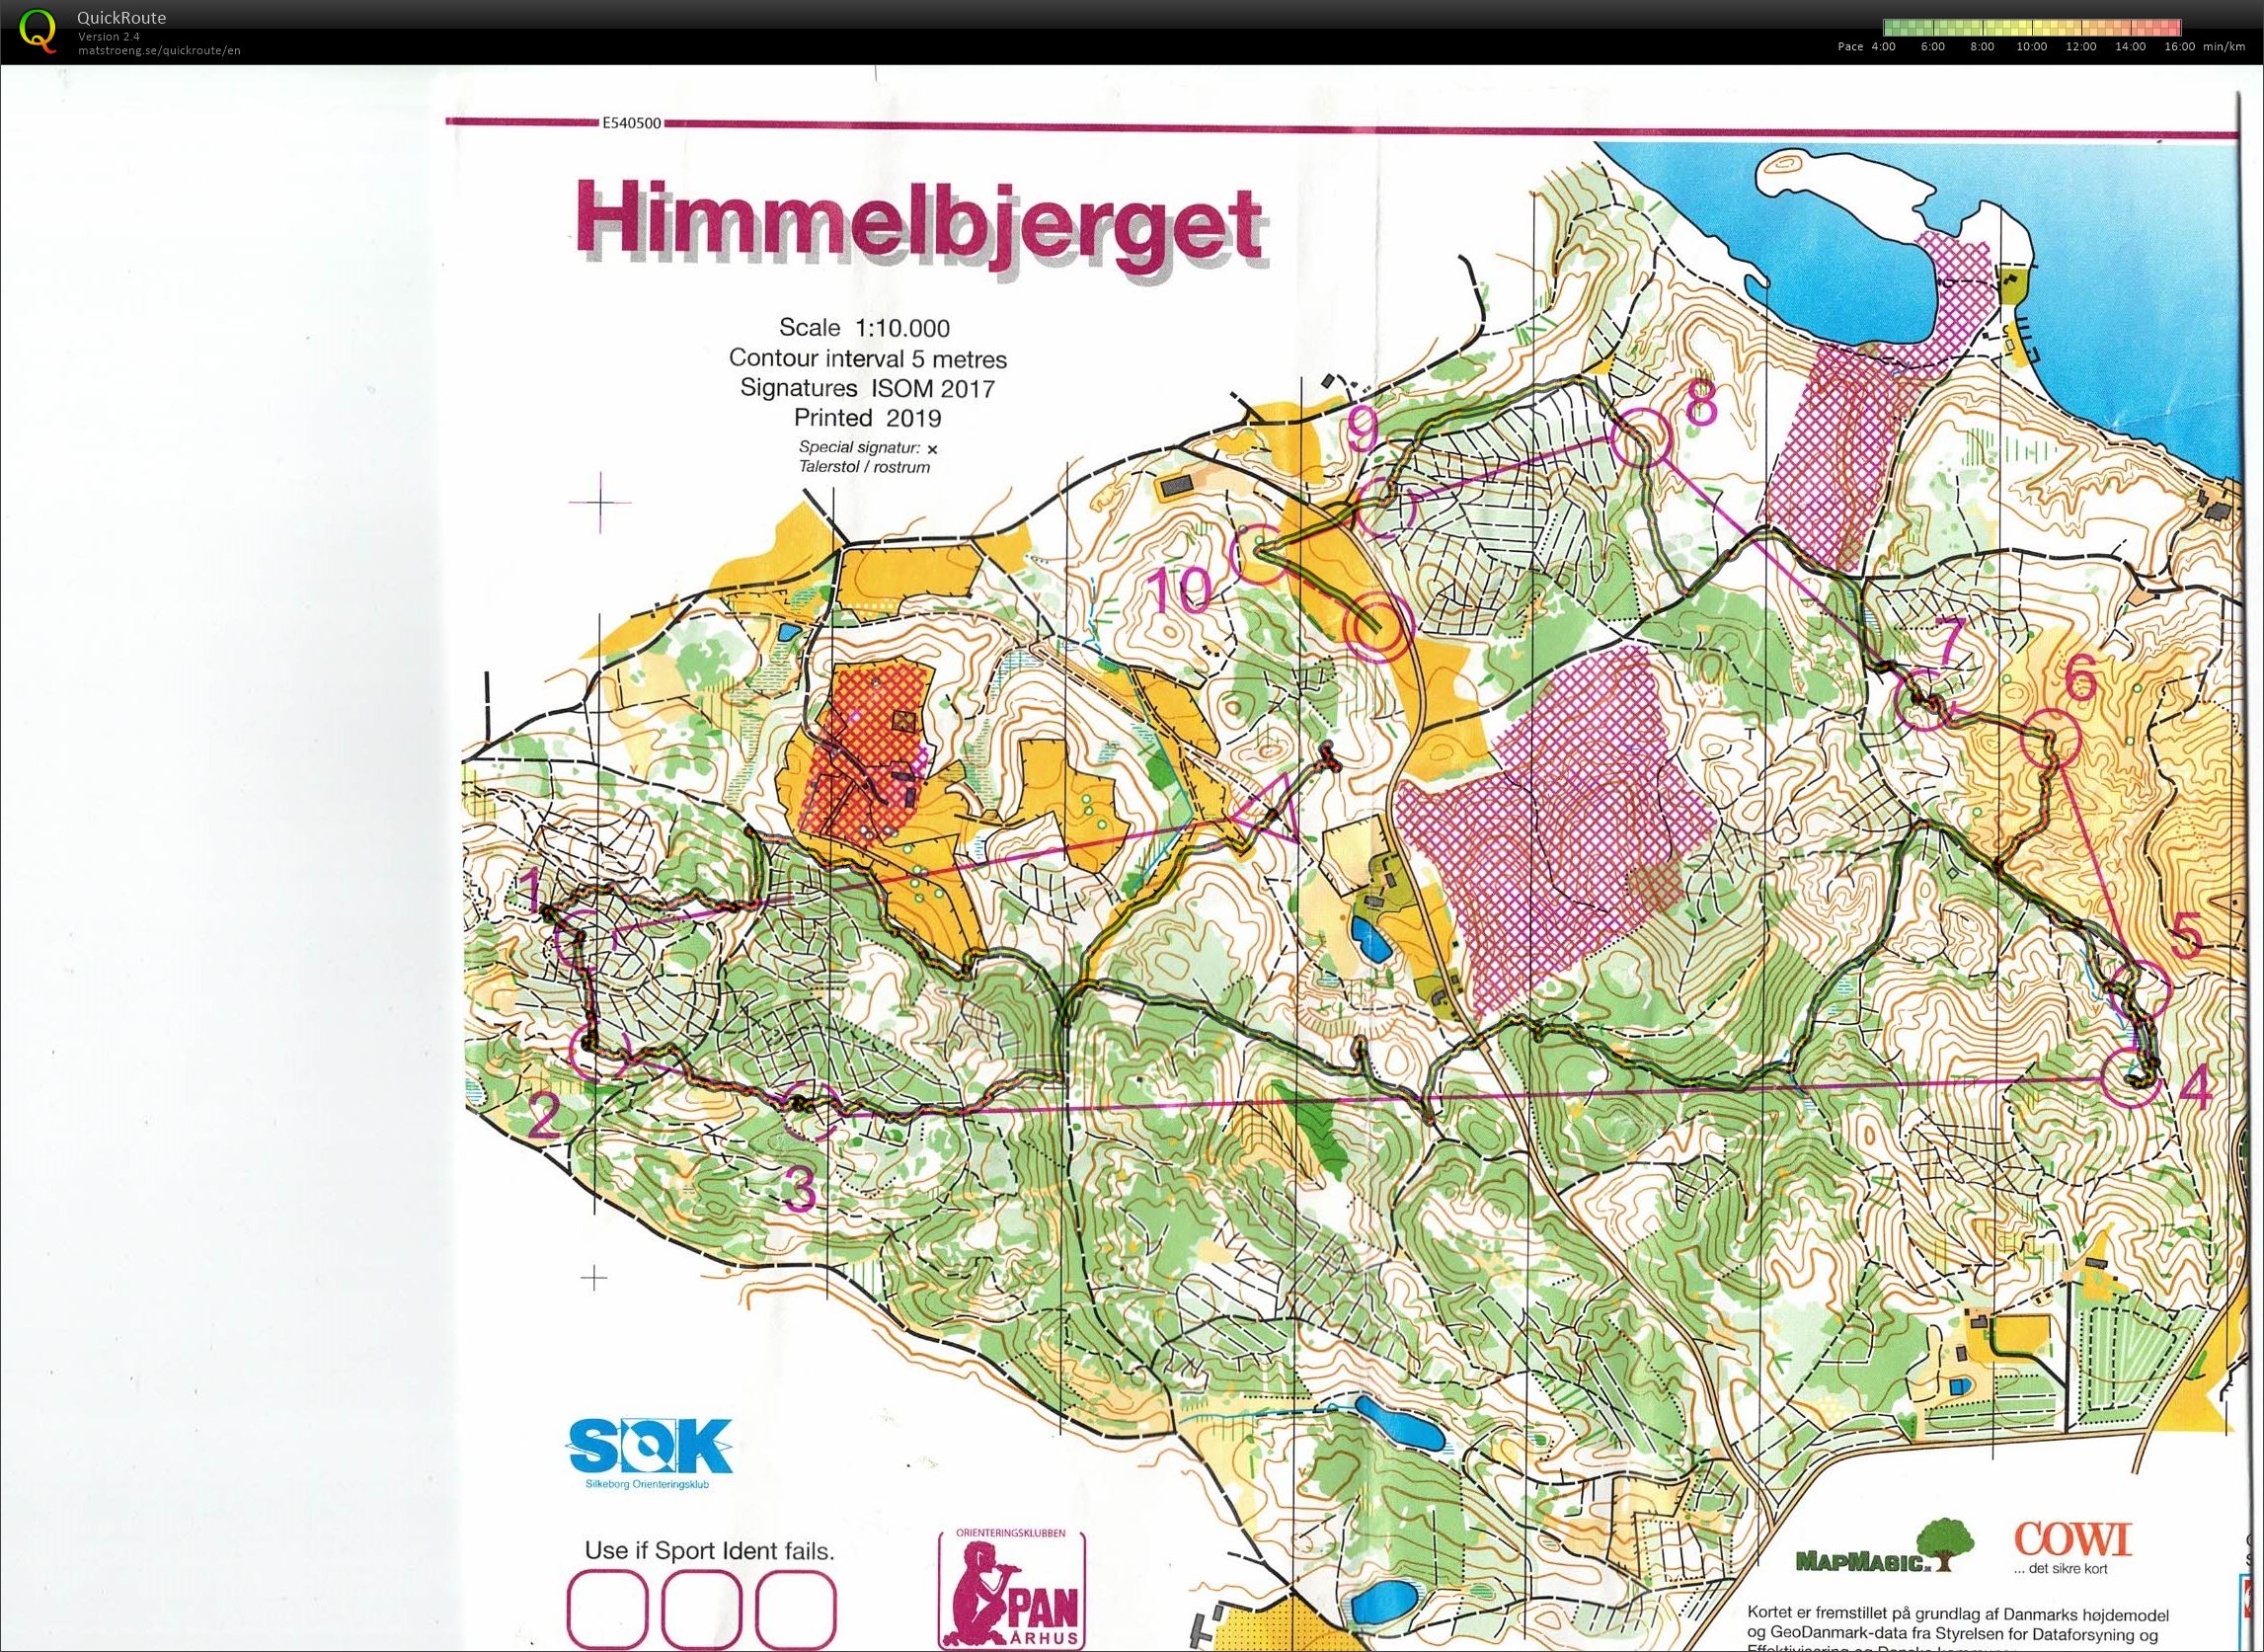 Himmelbjerget, JWOC testløb, Bane Åben 4, Pia Gade, 090619 (09-06-2019)